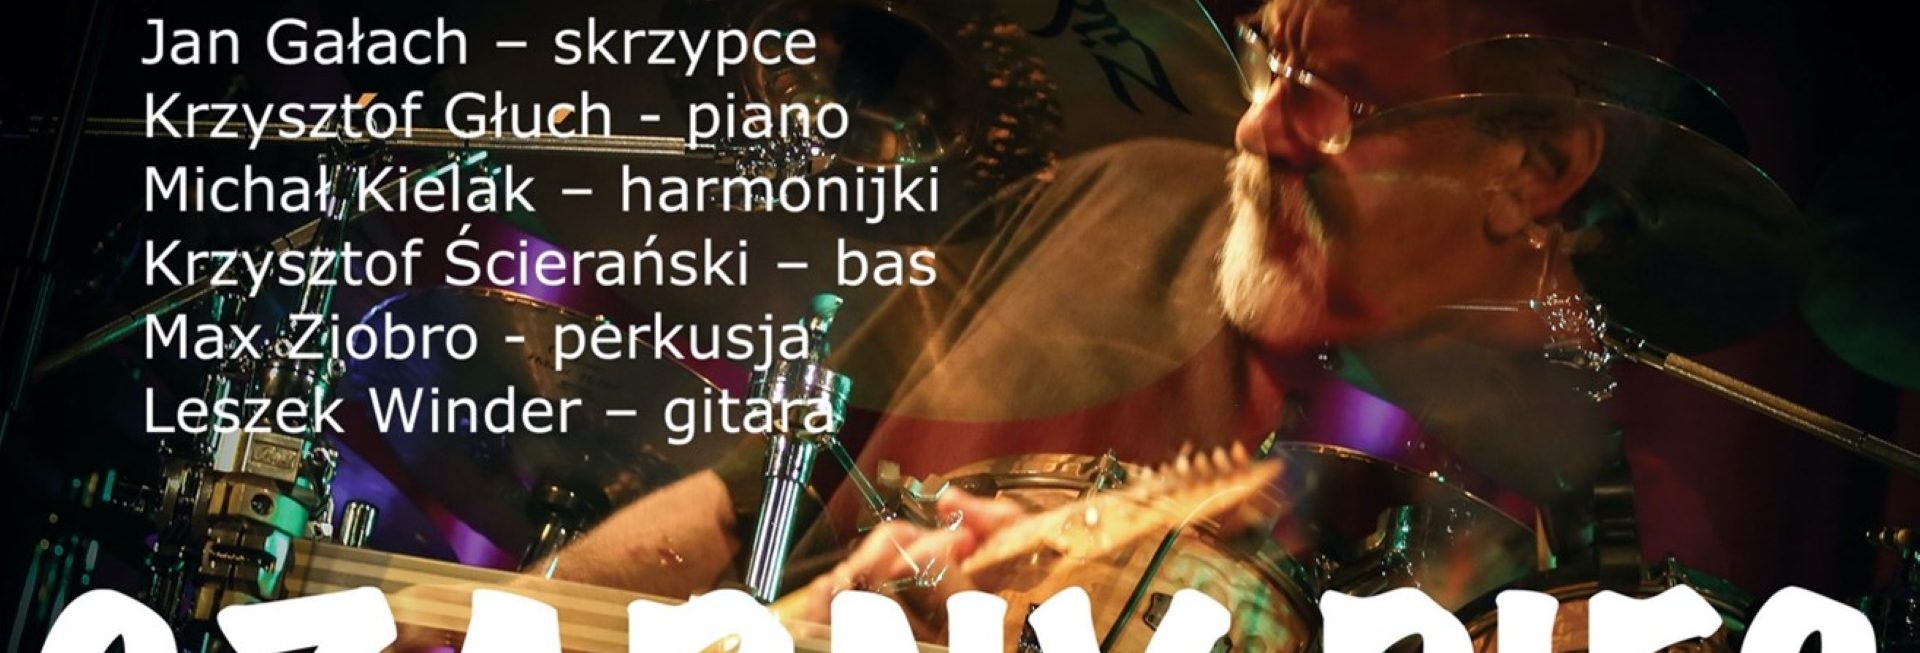 Plakat graficzny zapraszający do Olsztyna na koncert zespołu Czarny Pies i Adam Zalewski TRIO "Na Zakończenie Lata" - Olsztyn 2021.